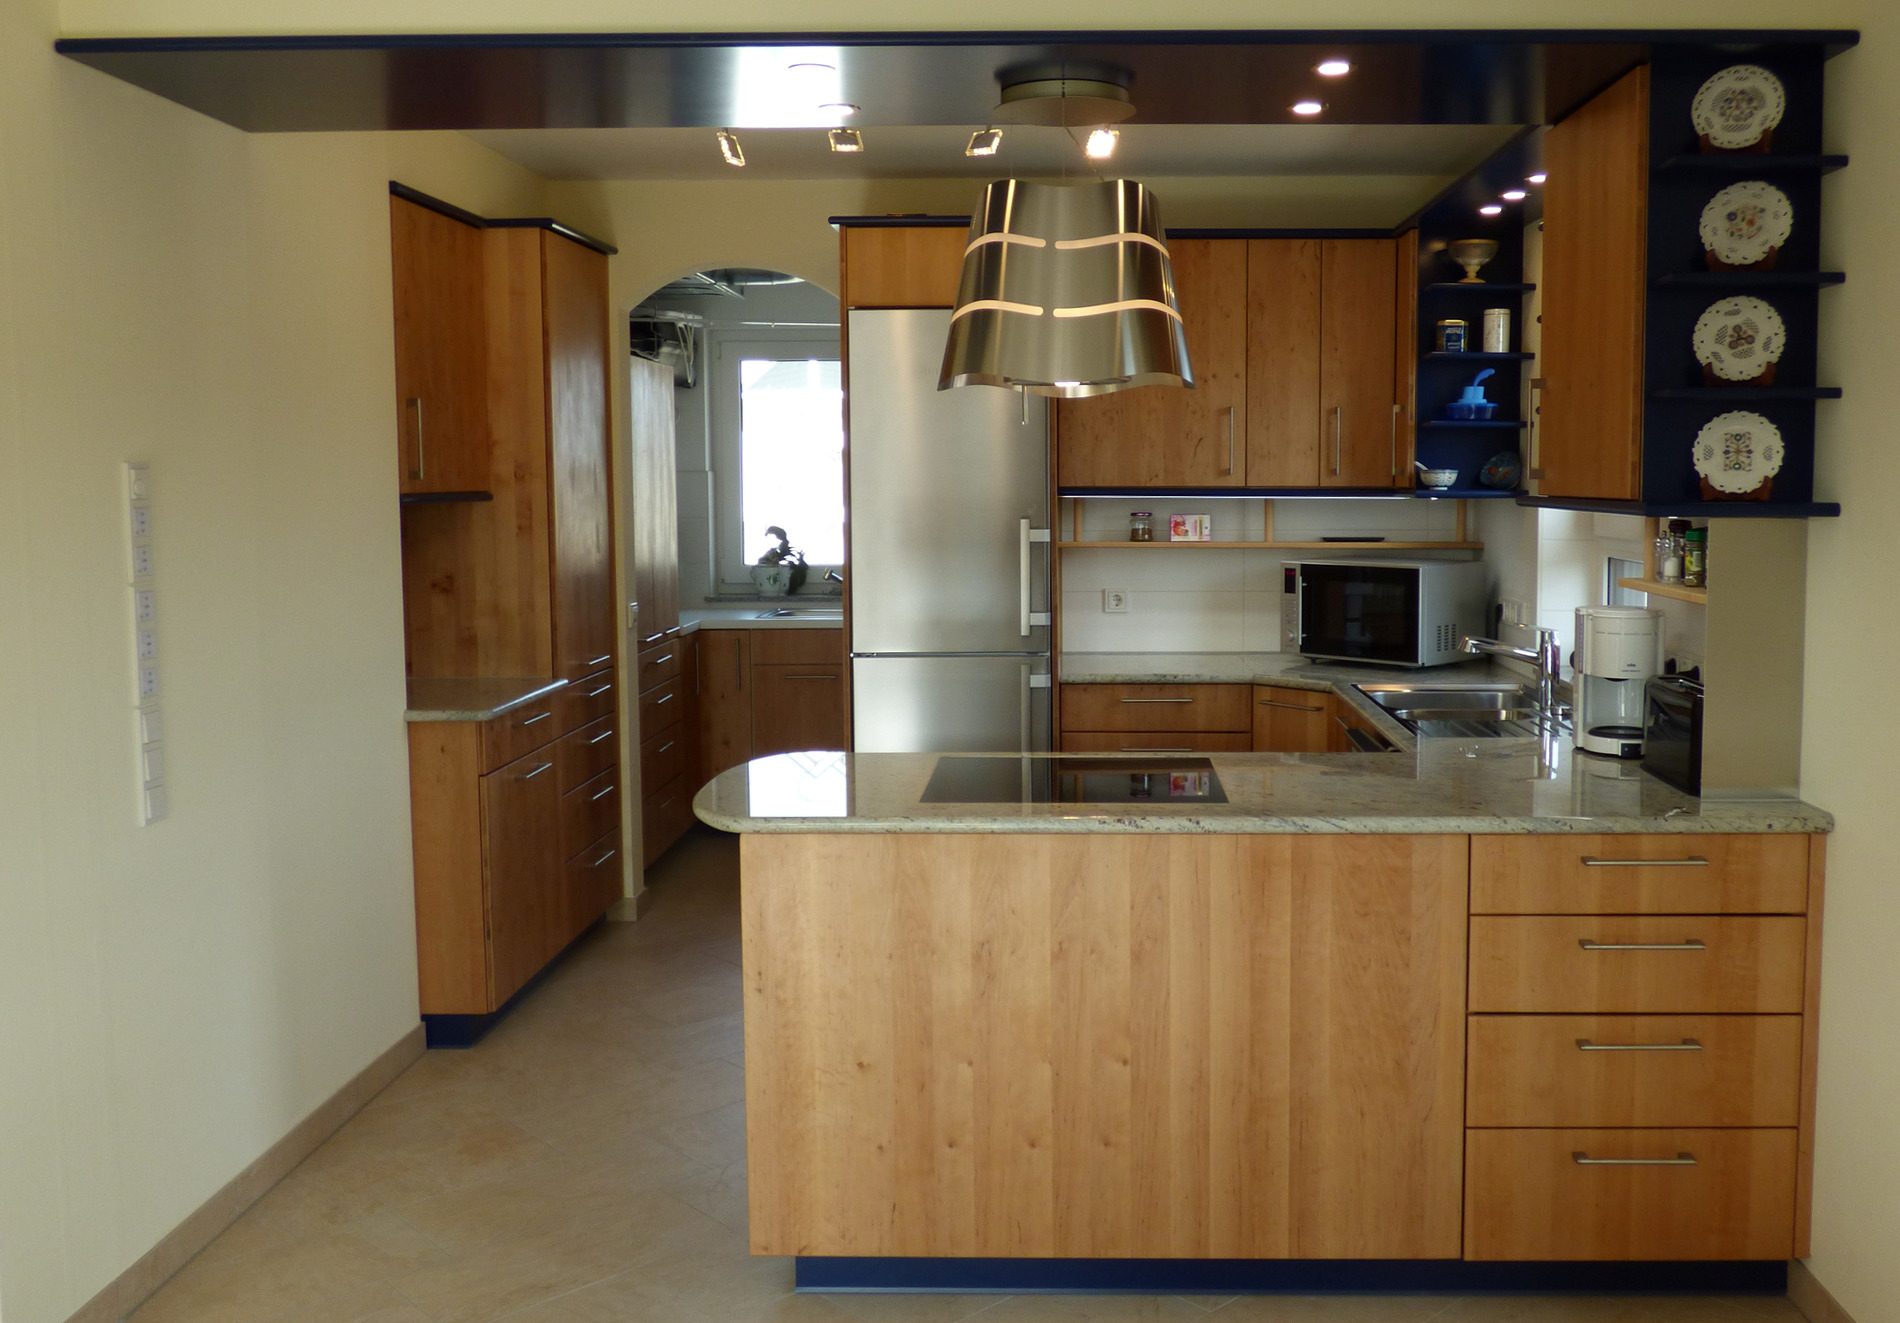 Moderne Küche mit Holzschränken, Edelstahlgeräten und einer Kochinsel mit Hängeleuchten darüber, eingebettet in ein Raumdesign mit warmen Farbtönen und dekorativen Tellern an der Wand.